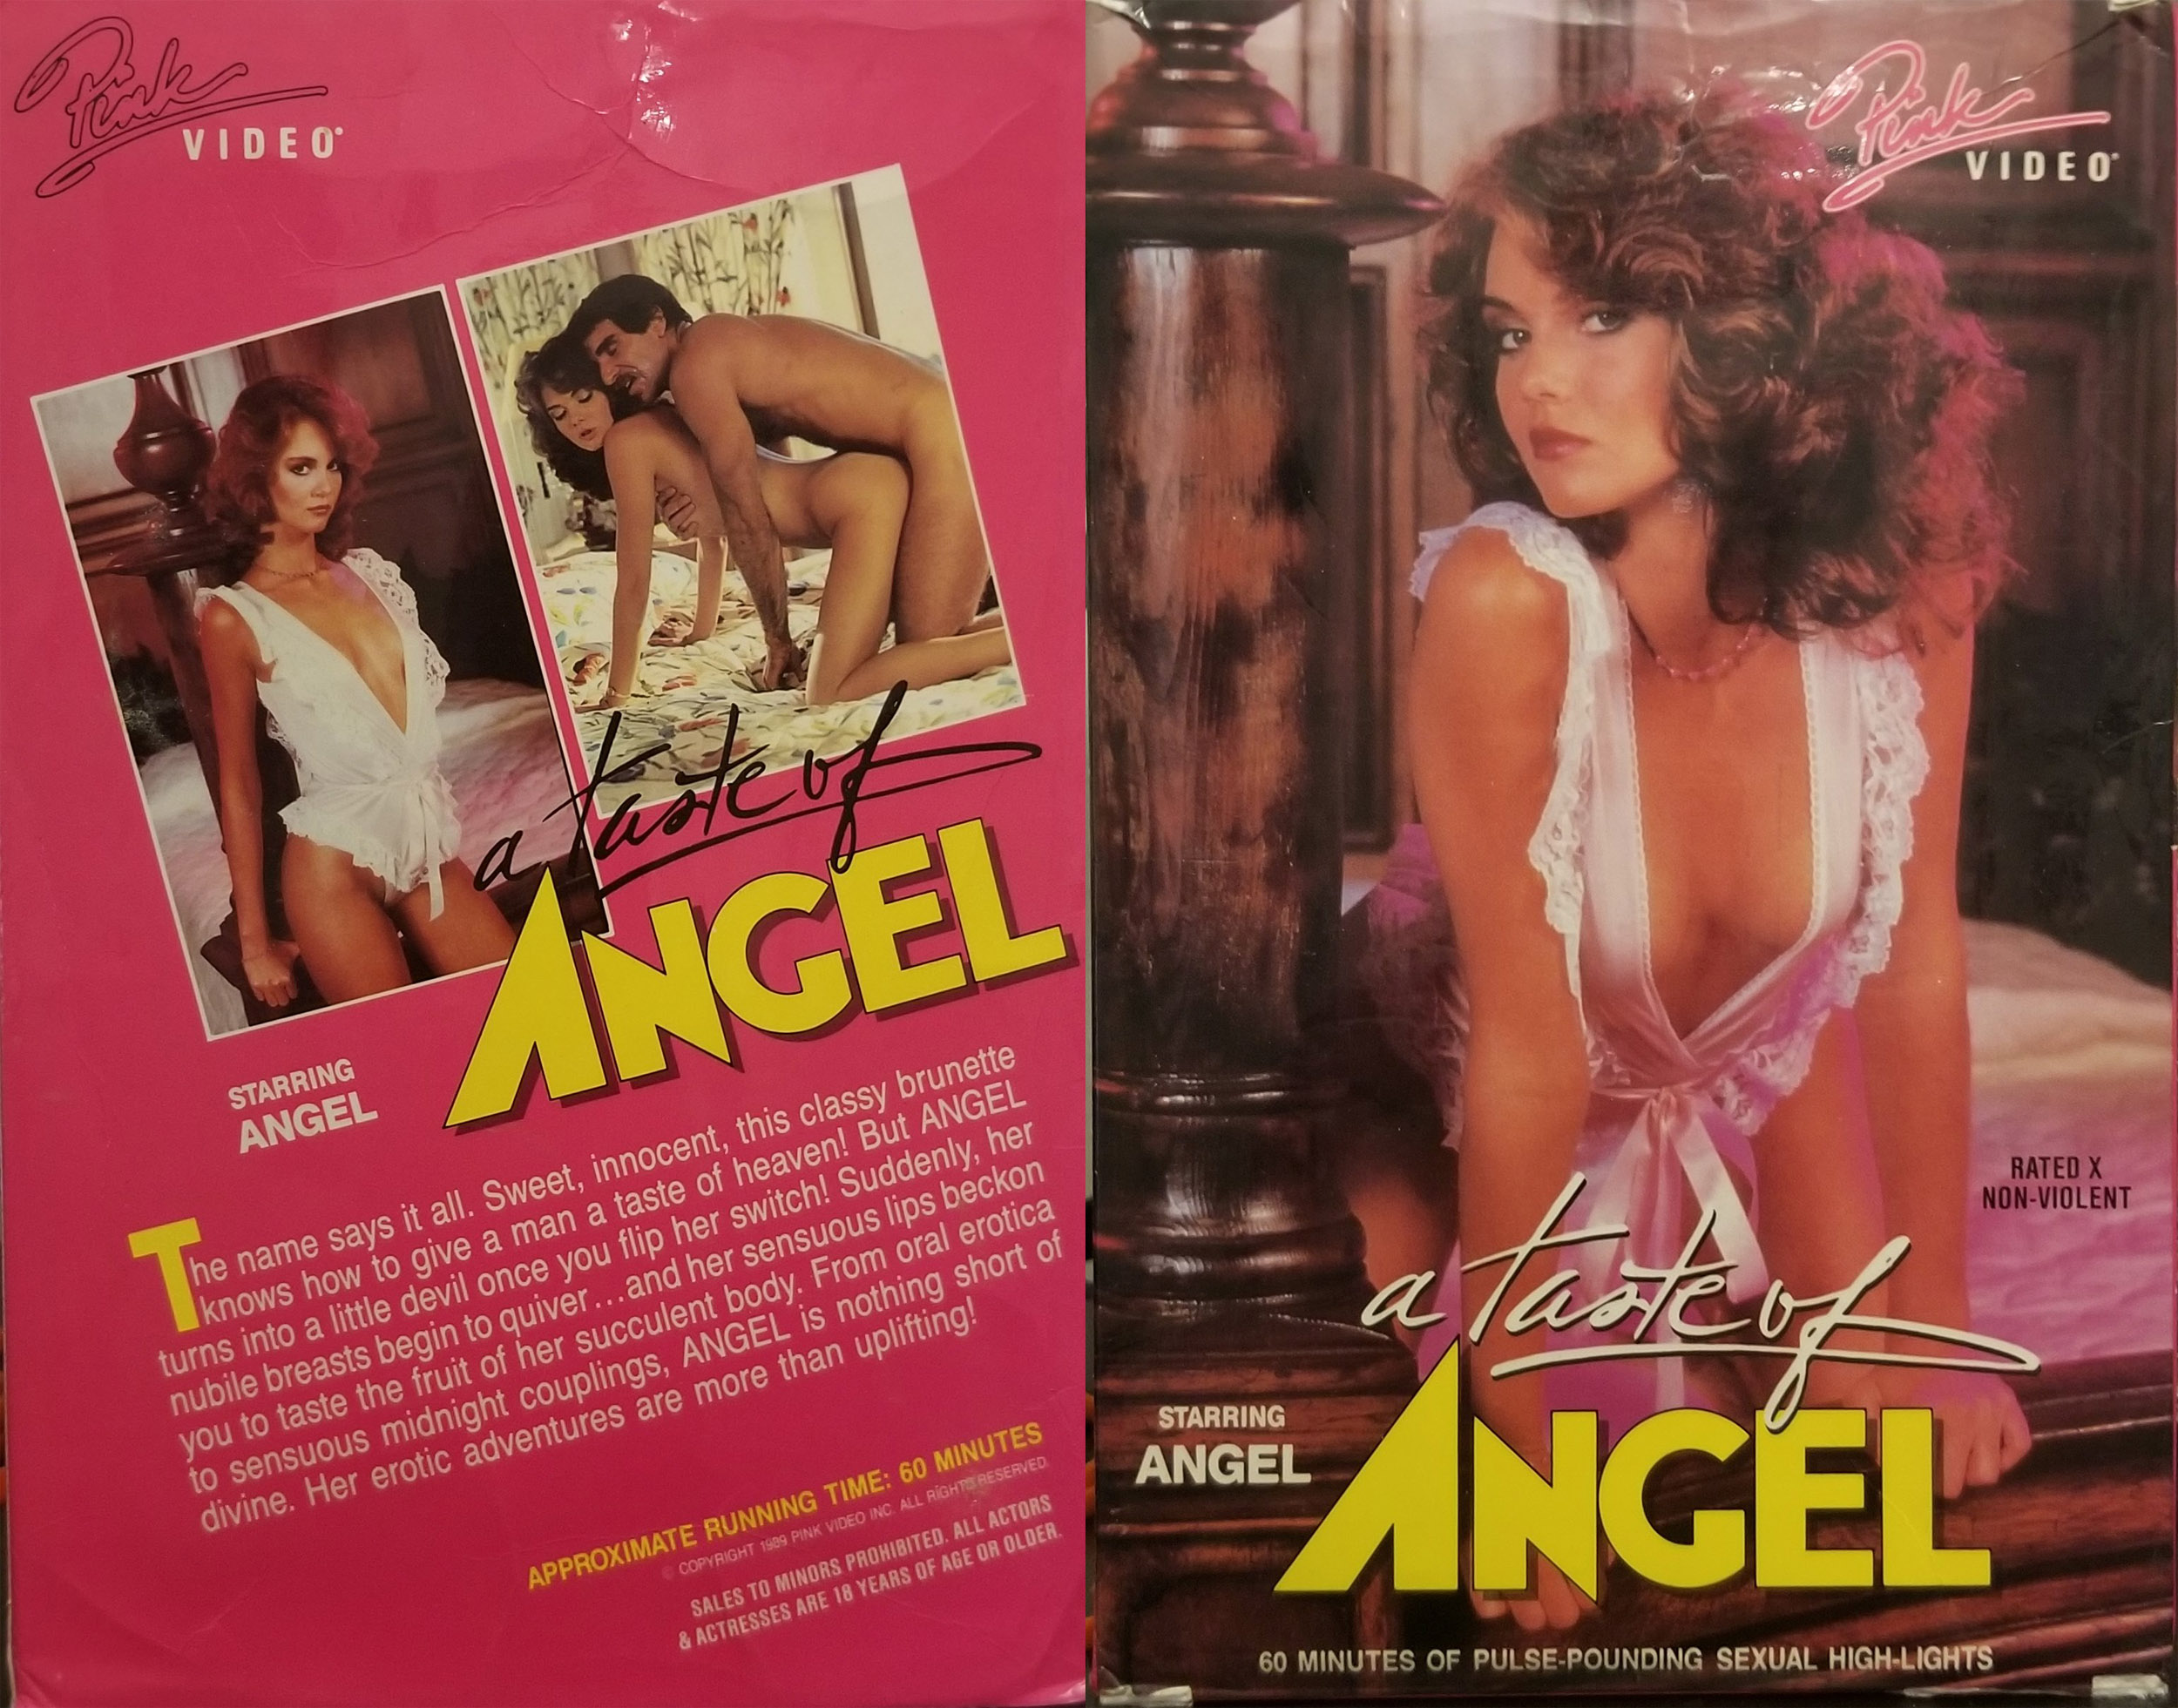 A Taste of Angel – 1989